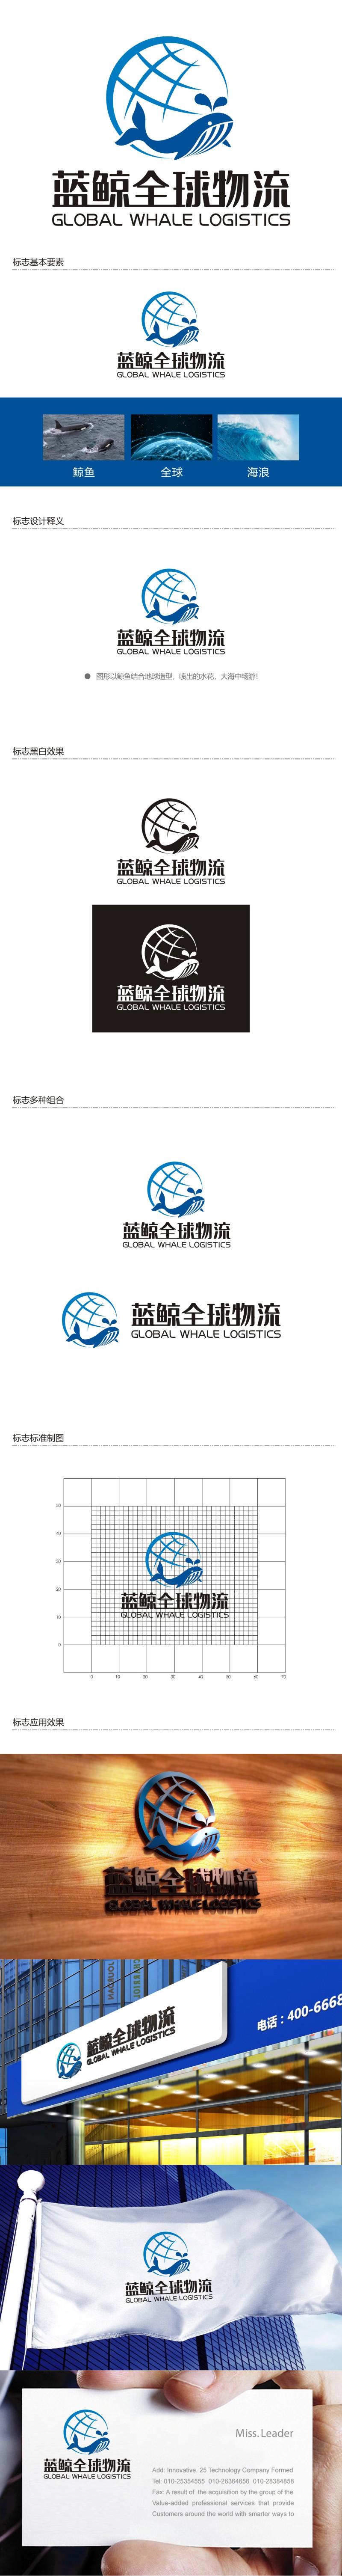 谭家强的蓝鲸全球物流（广州）有限公司logo设计